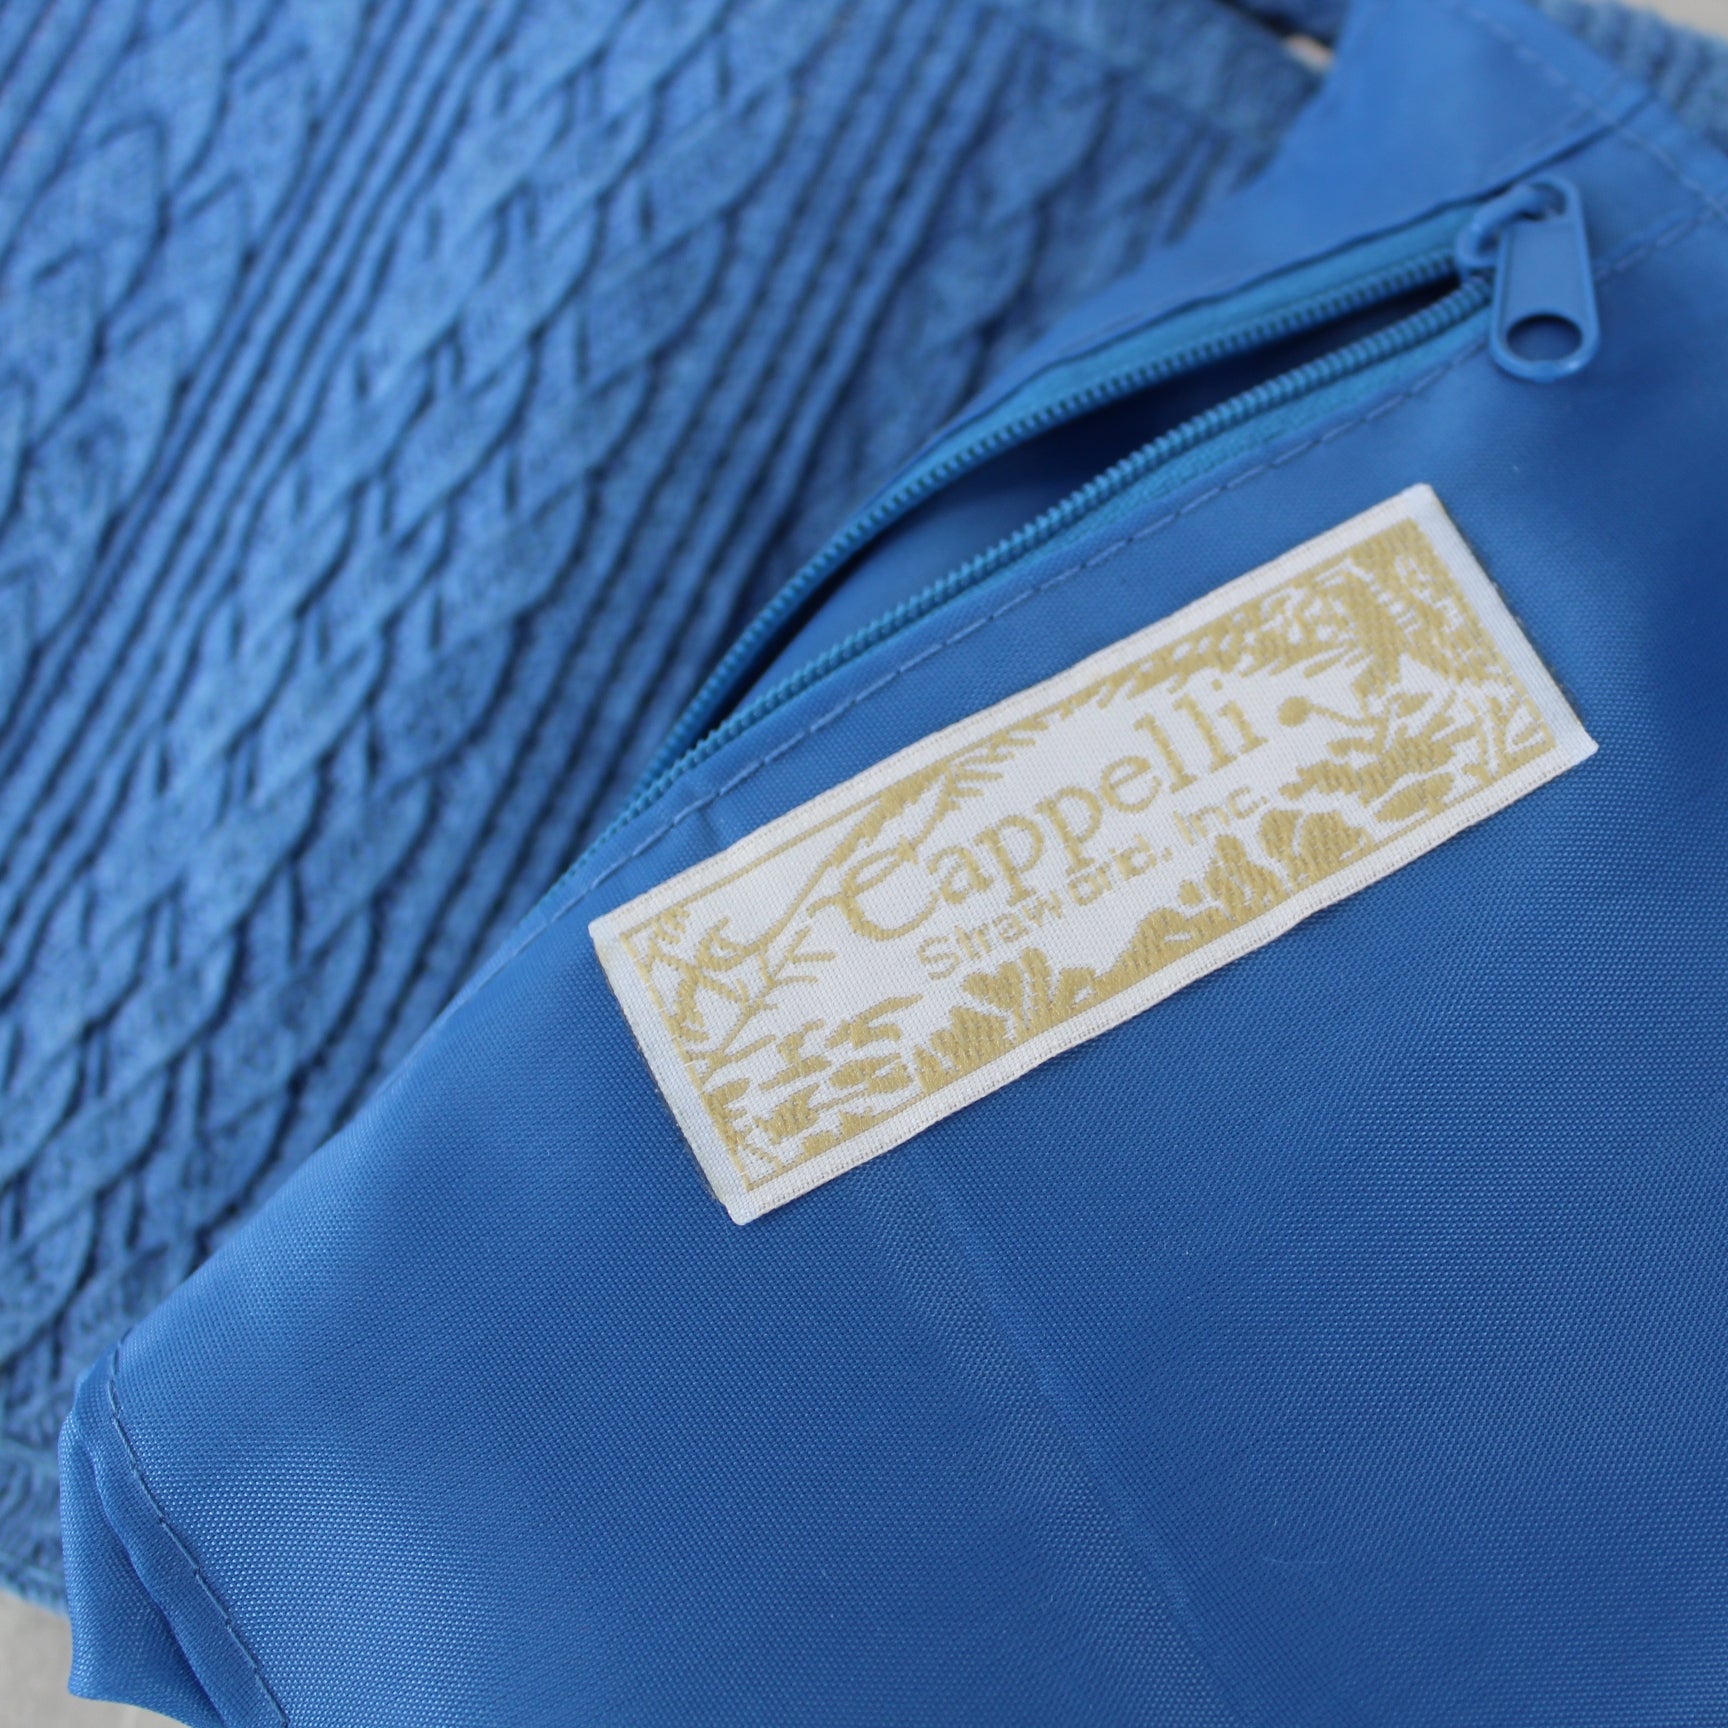 Capelli Small Shoulder Handbag Blue Woven Paper Handbag Unique orig ribbon tag